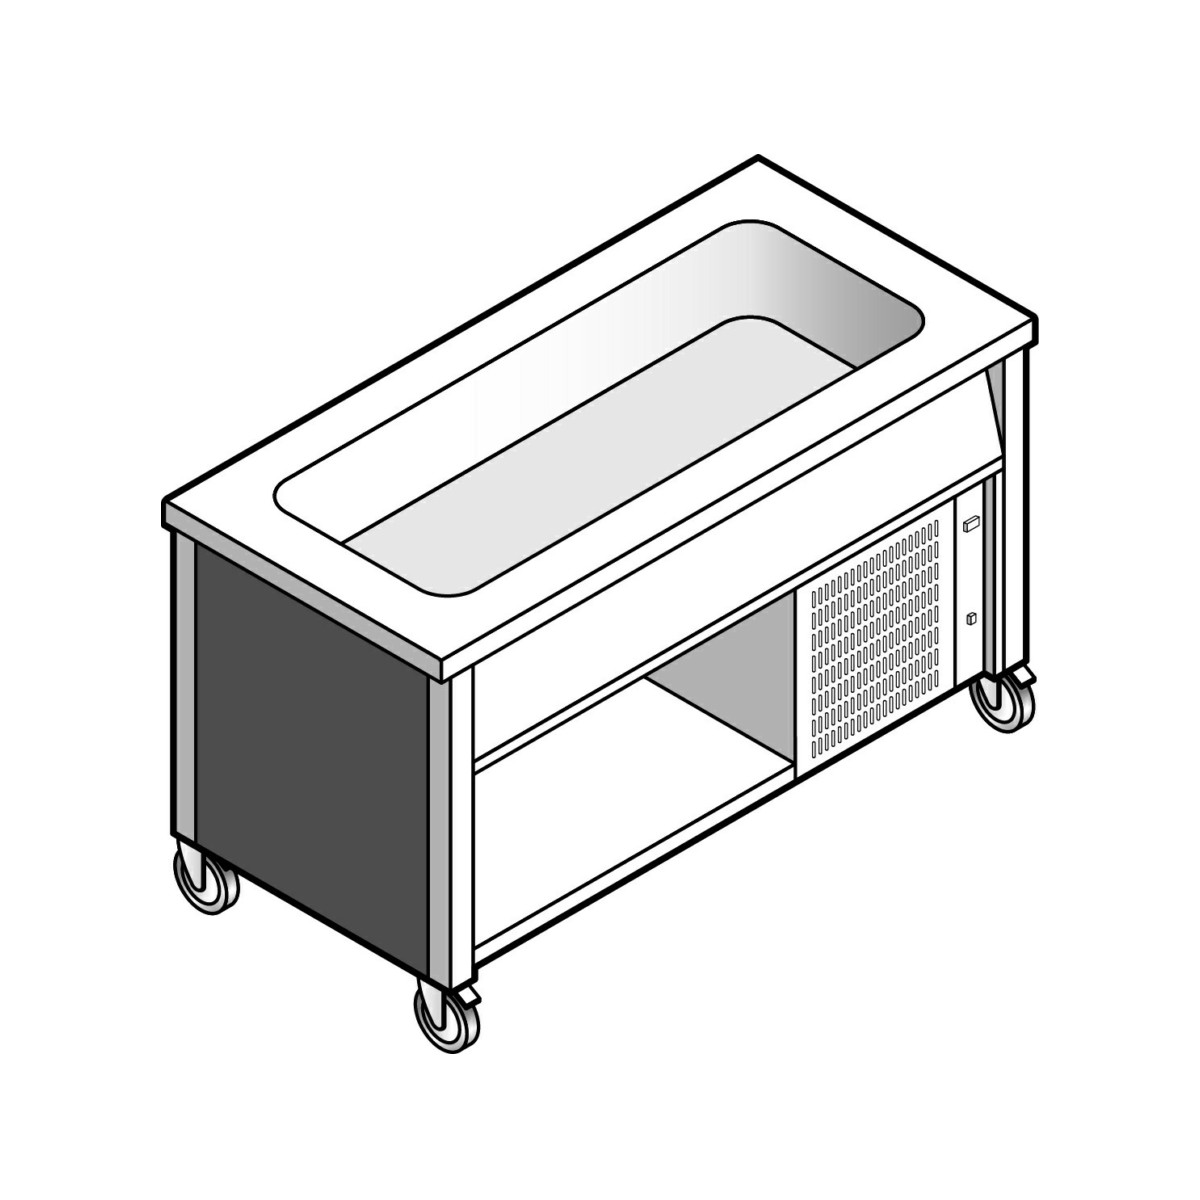 Прилавок EMAINOX EGVR 15 8035018 с охлаждаемой ванной на открытом шкафу 